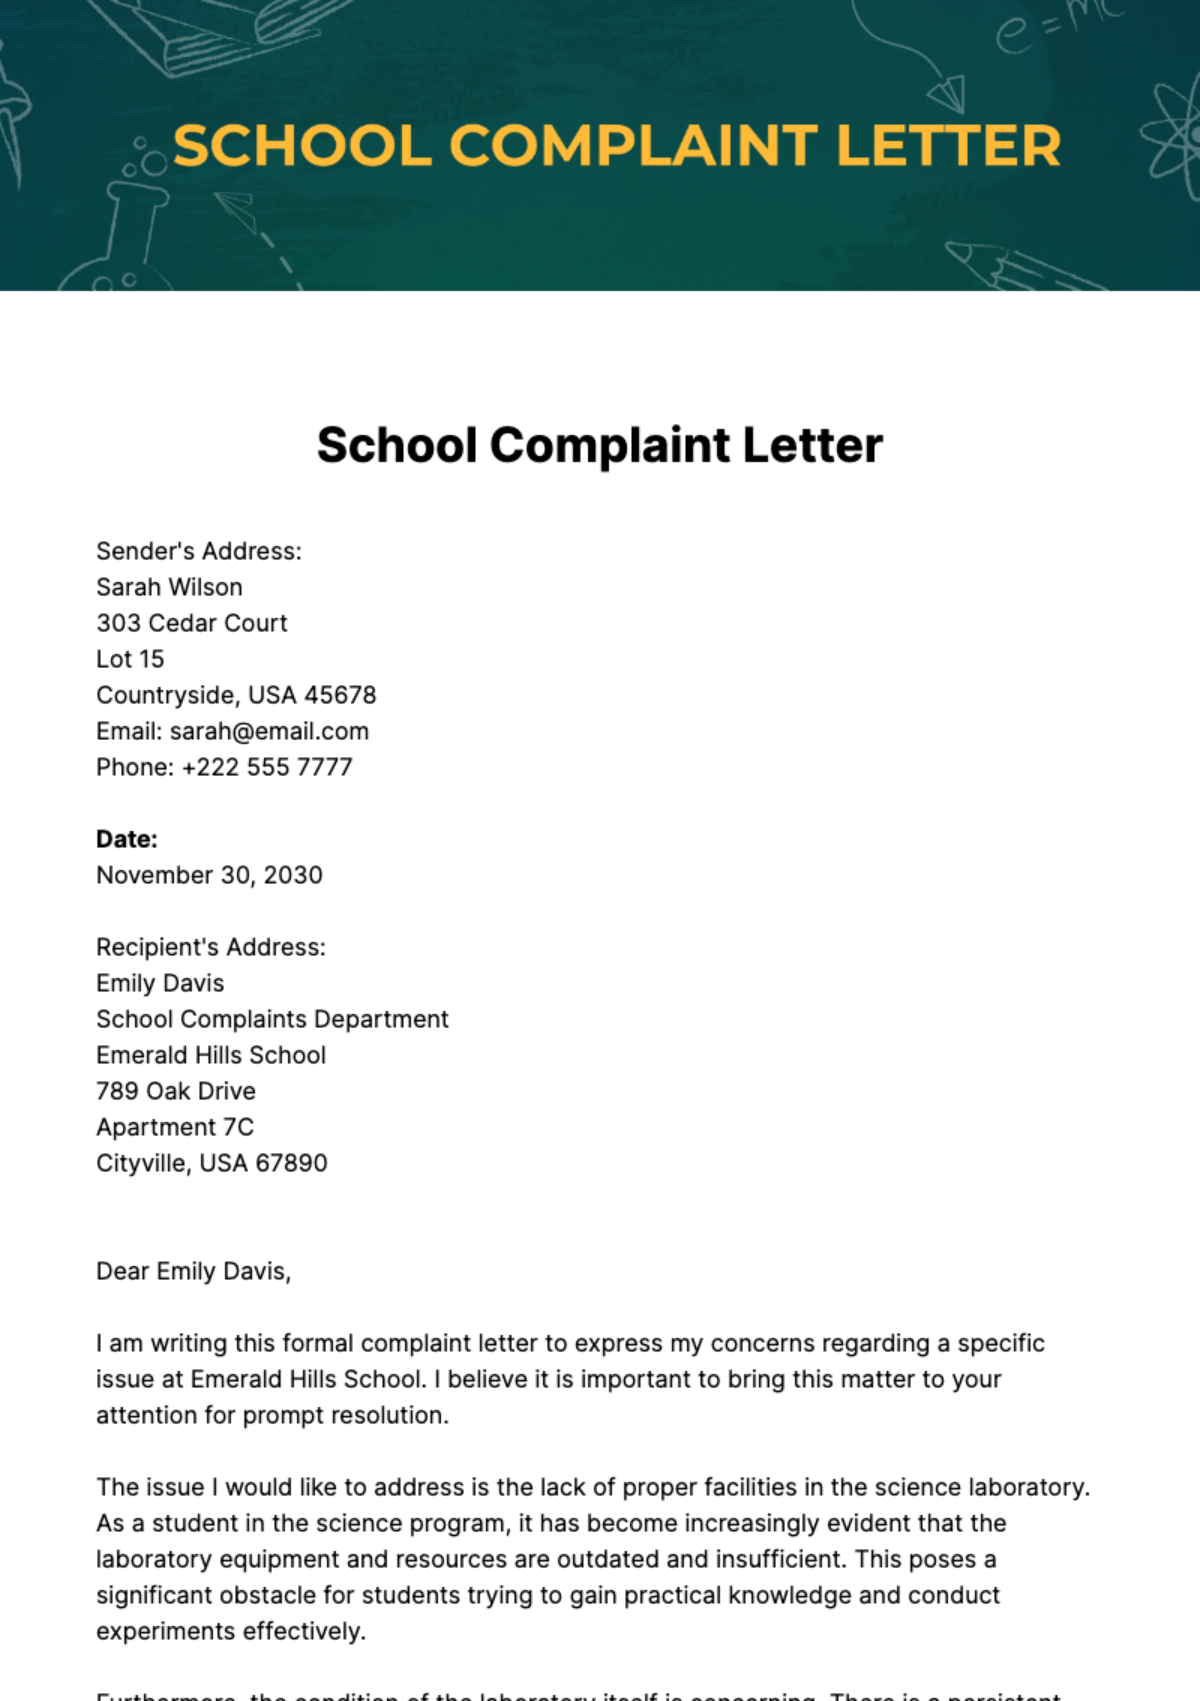 School Complaint Letter Template